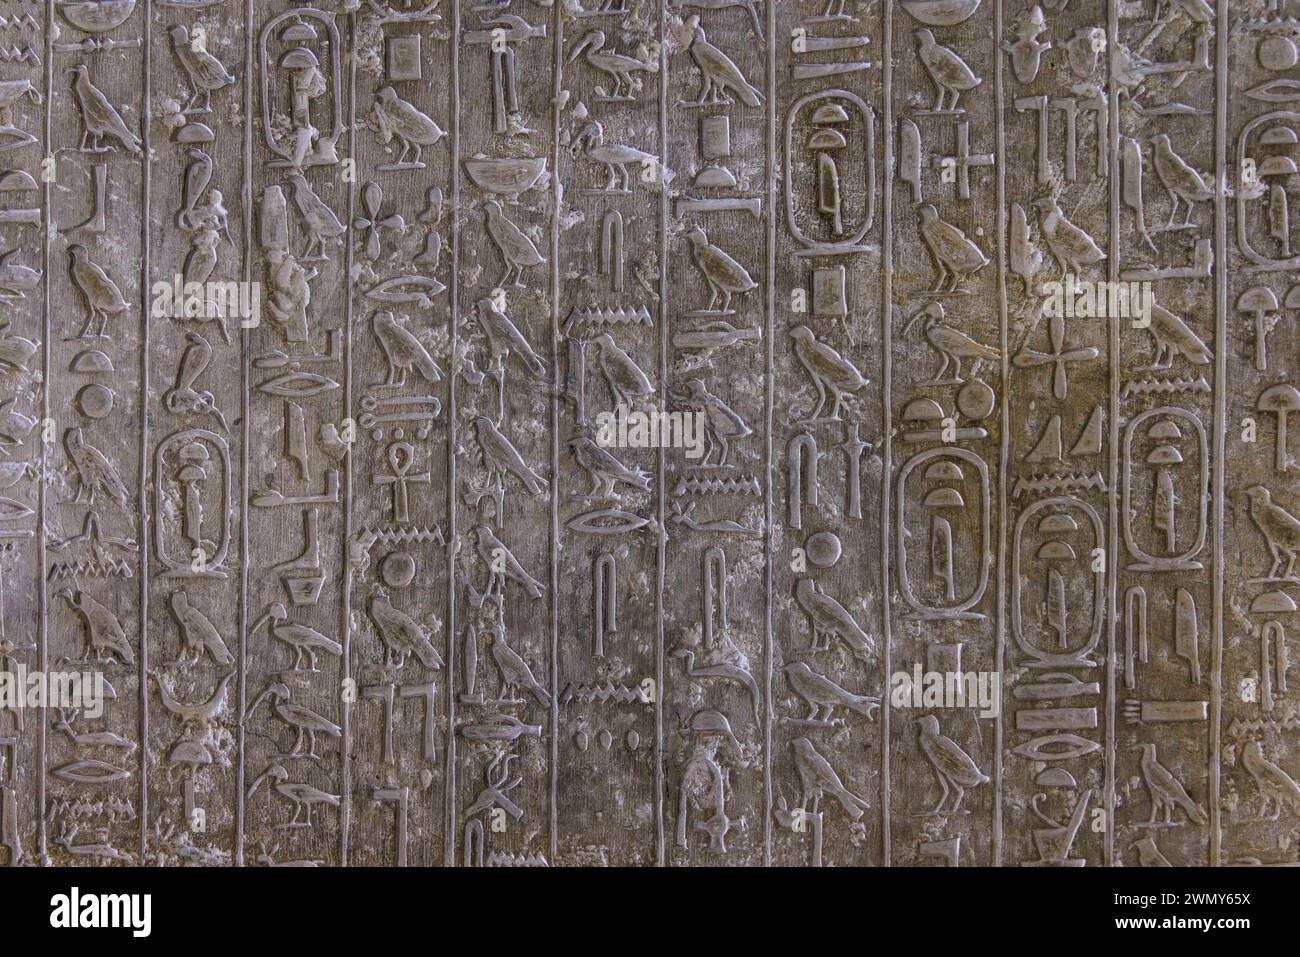 Ägypten, Kairo, Sakkara, Memphis und seine Nekropole, die Pyramidenfelder von Gizeh bis Dahshur, die von der UNESCO zum Weltkulturerbe erklärt wurden, Teti-Grab, Hieroglyphen Stockfoto